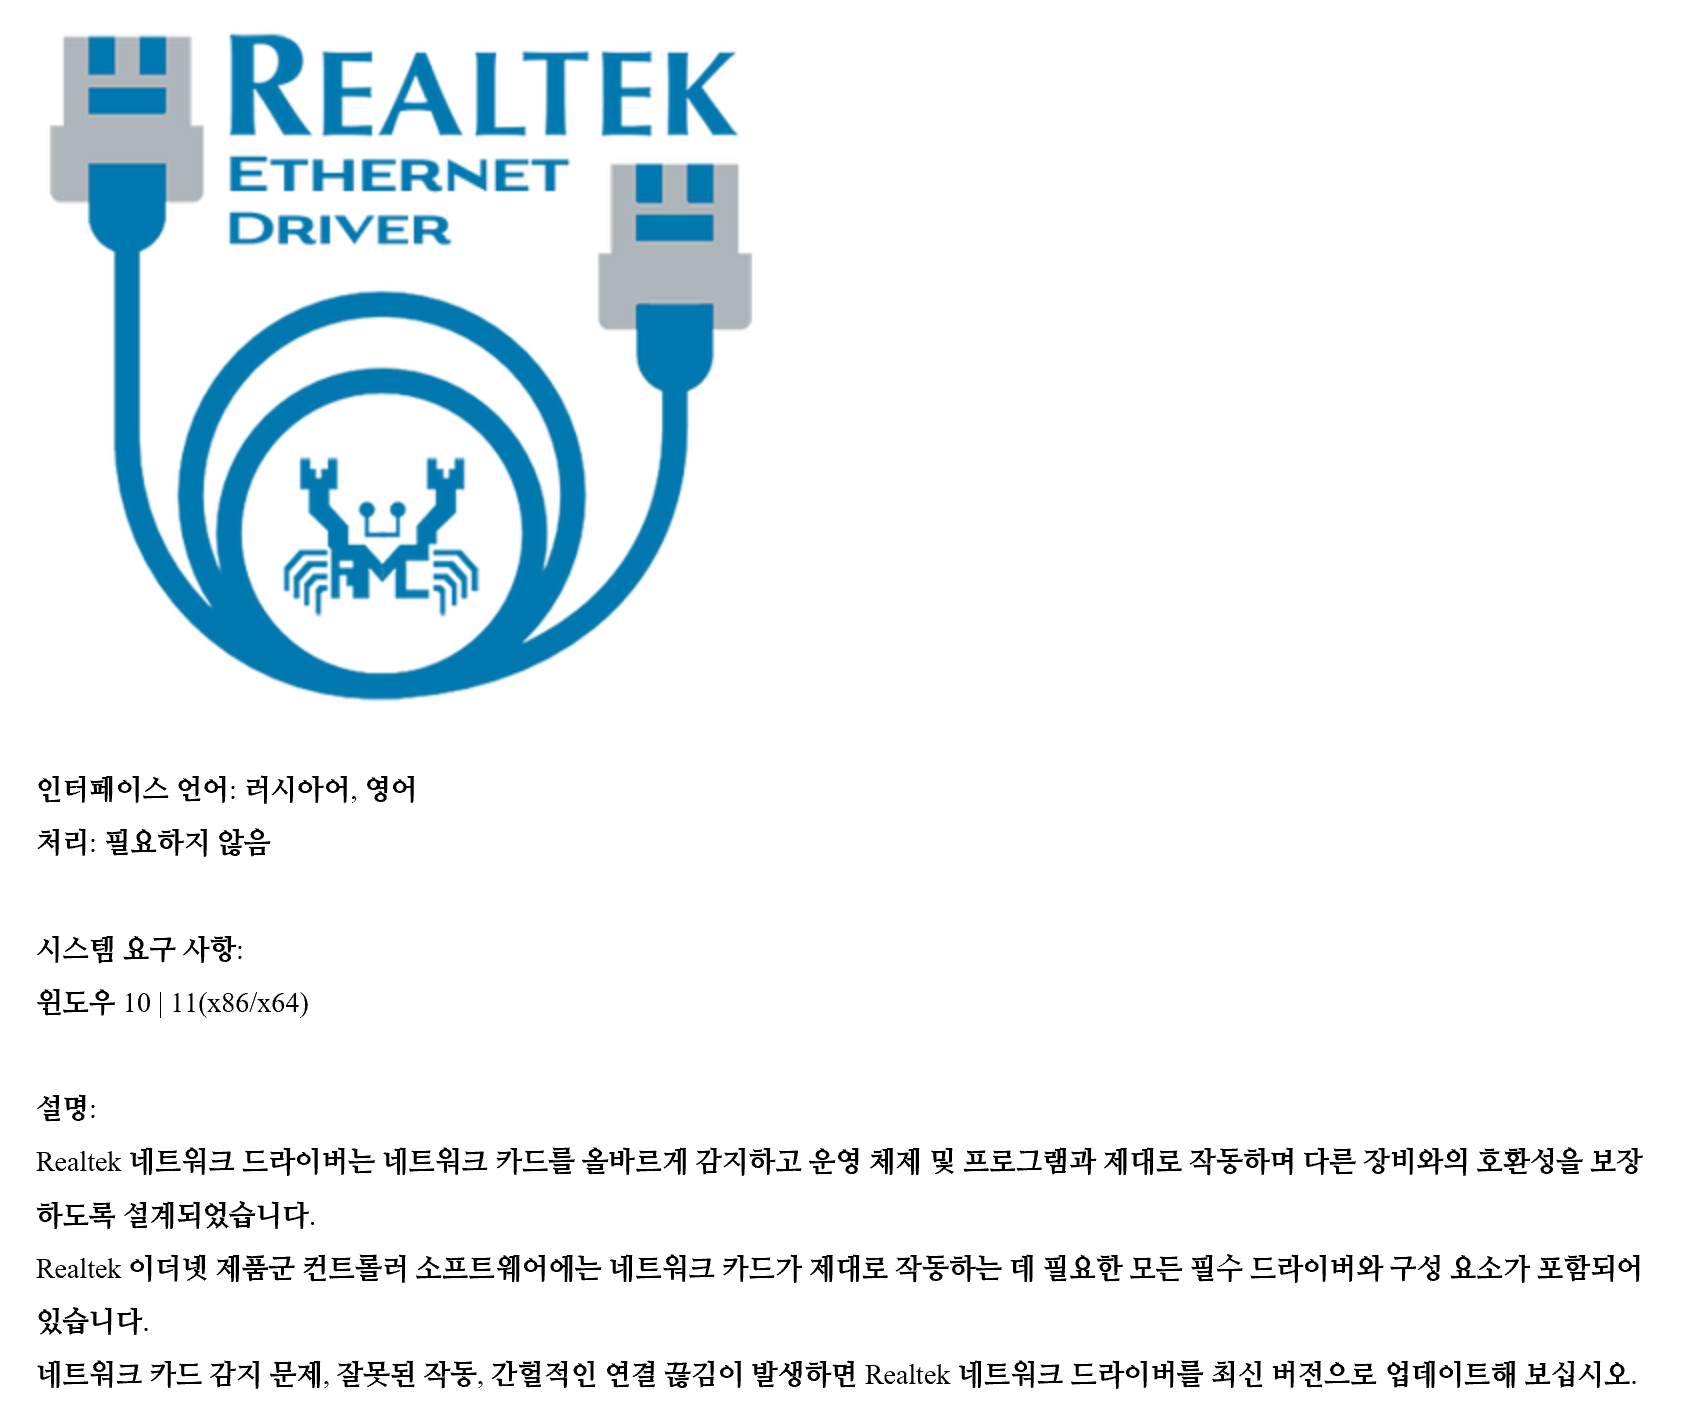 Realtek Ethernet Driver.png